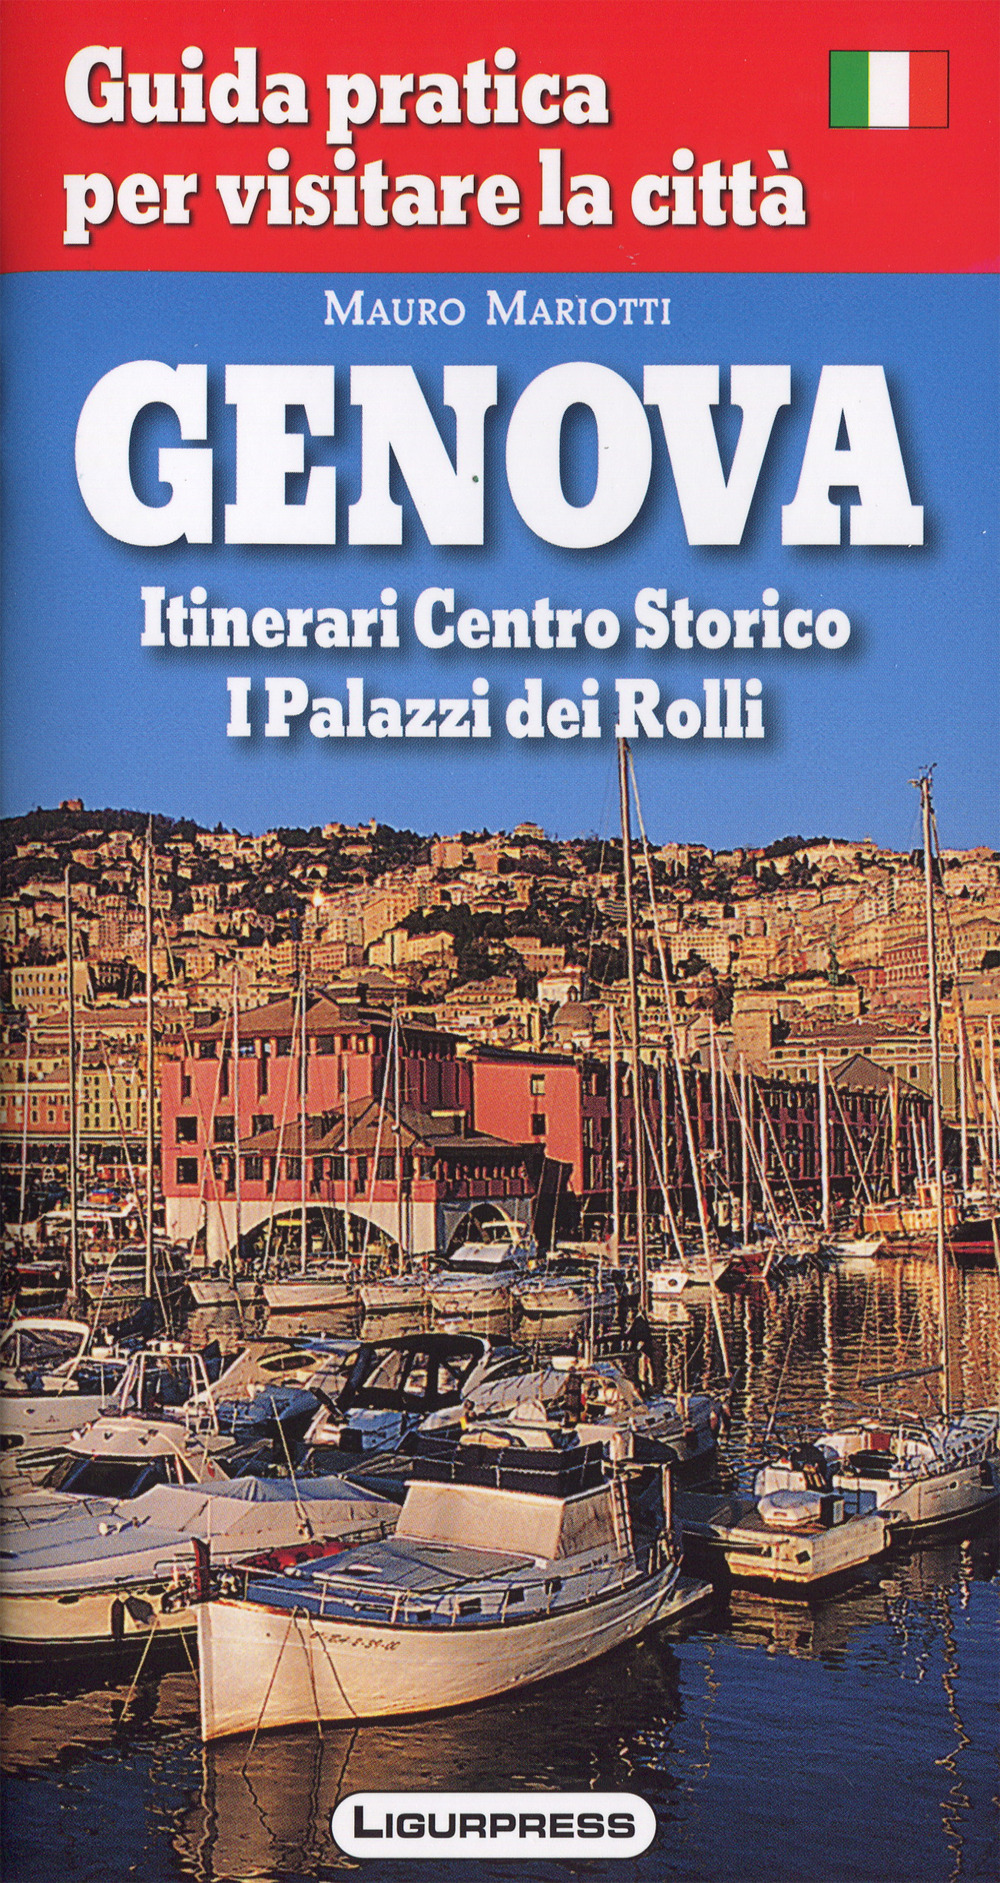 Genova. Guida pratica per visitare la città.